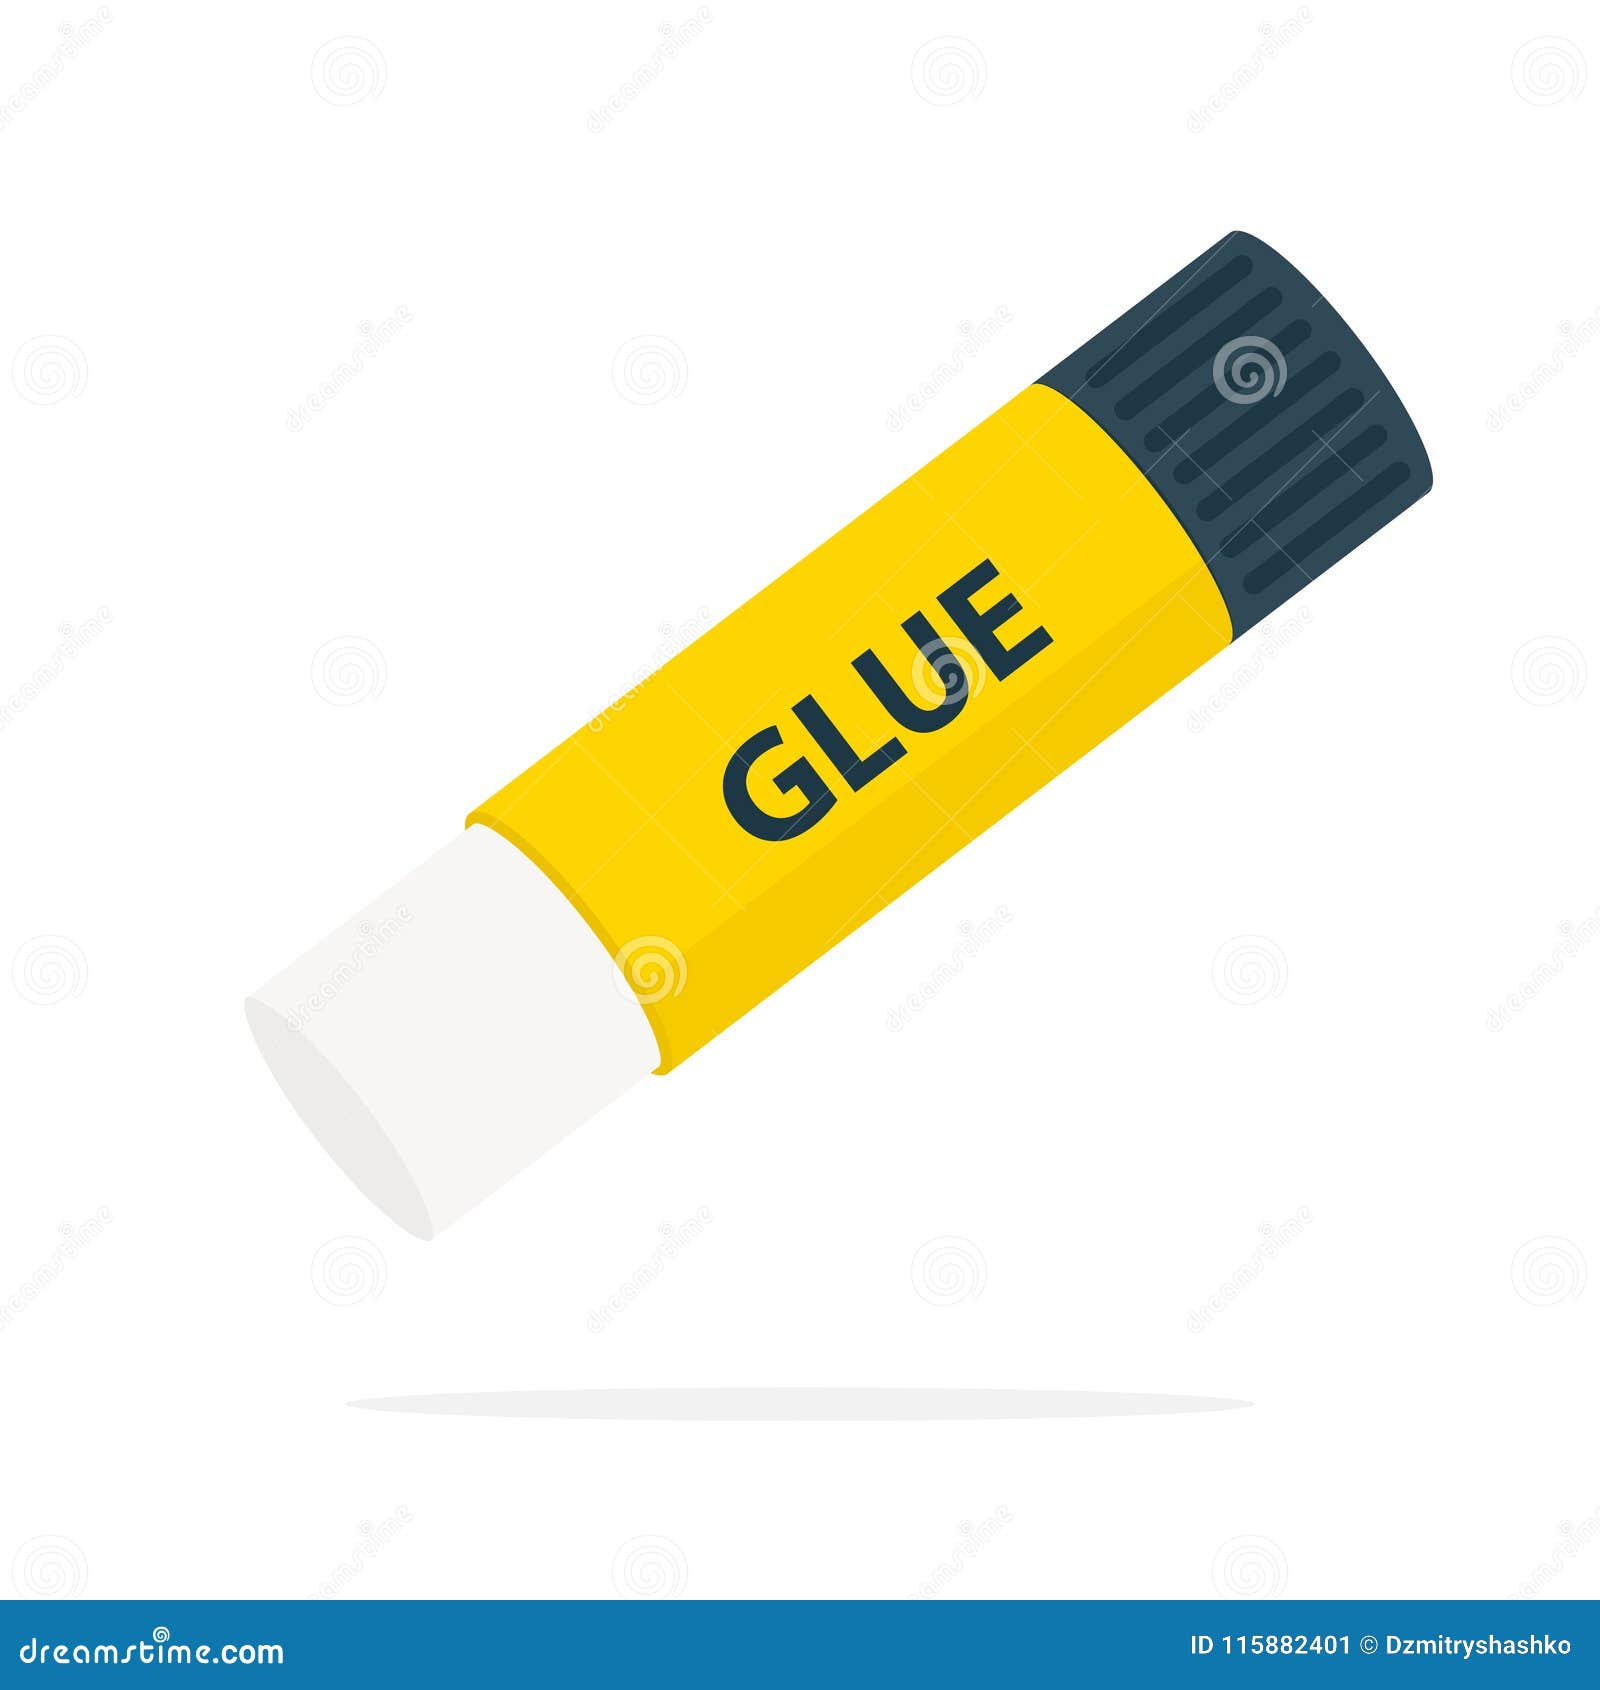 glue stick icon